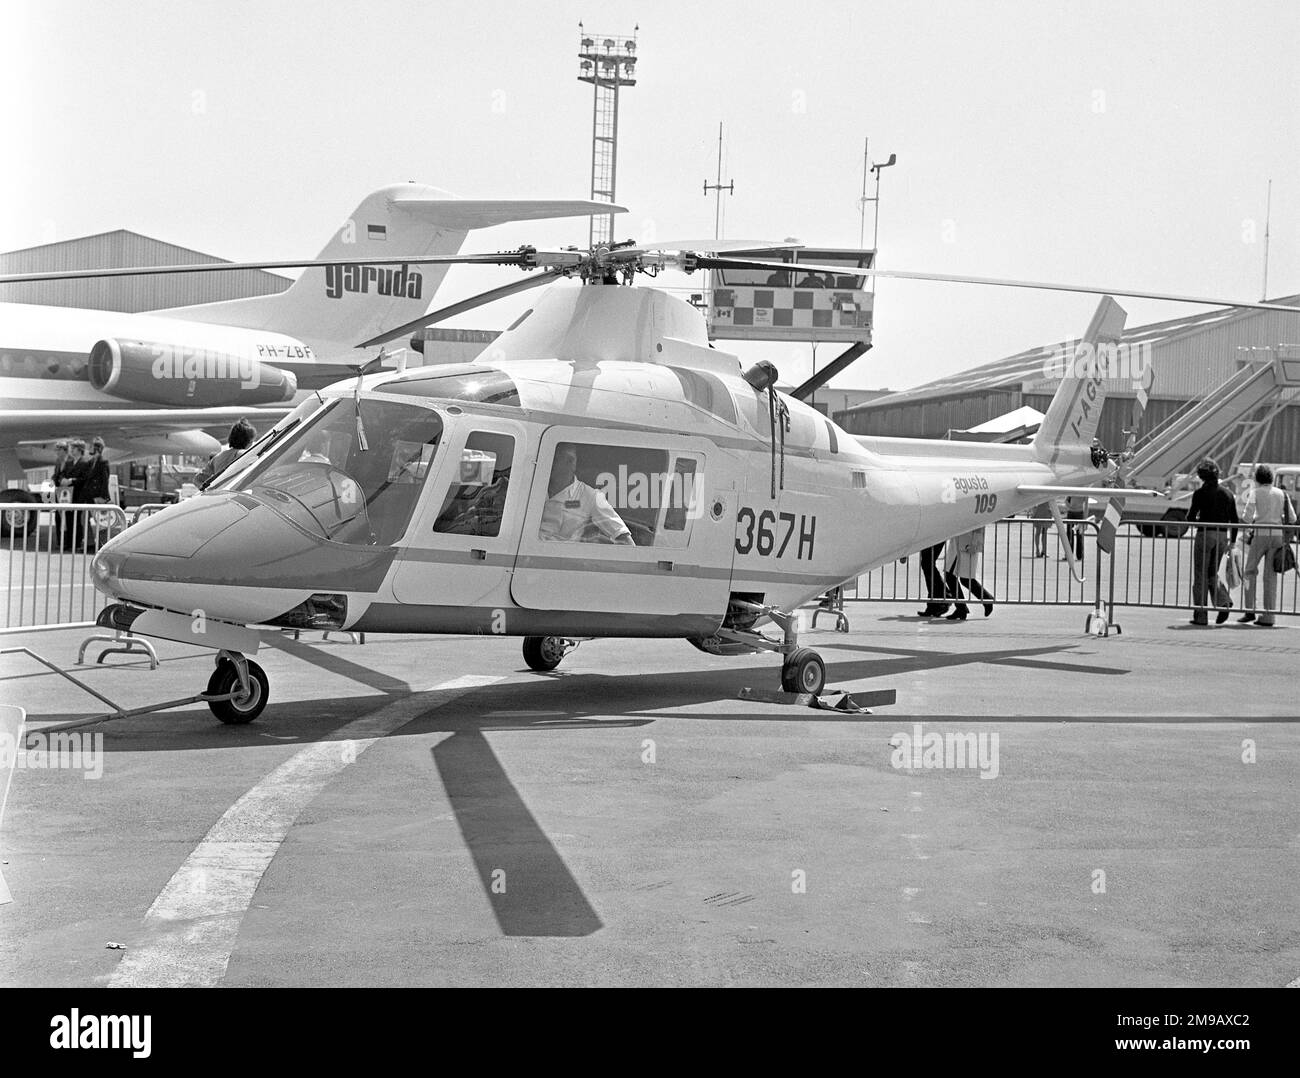 Agusta A,109C Hirundo I-AGUQ (msn 7104), au salon de l'Air de Paris en juin 1973, avec le numéro de série 367H. Banque D'Images